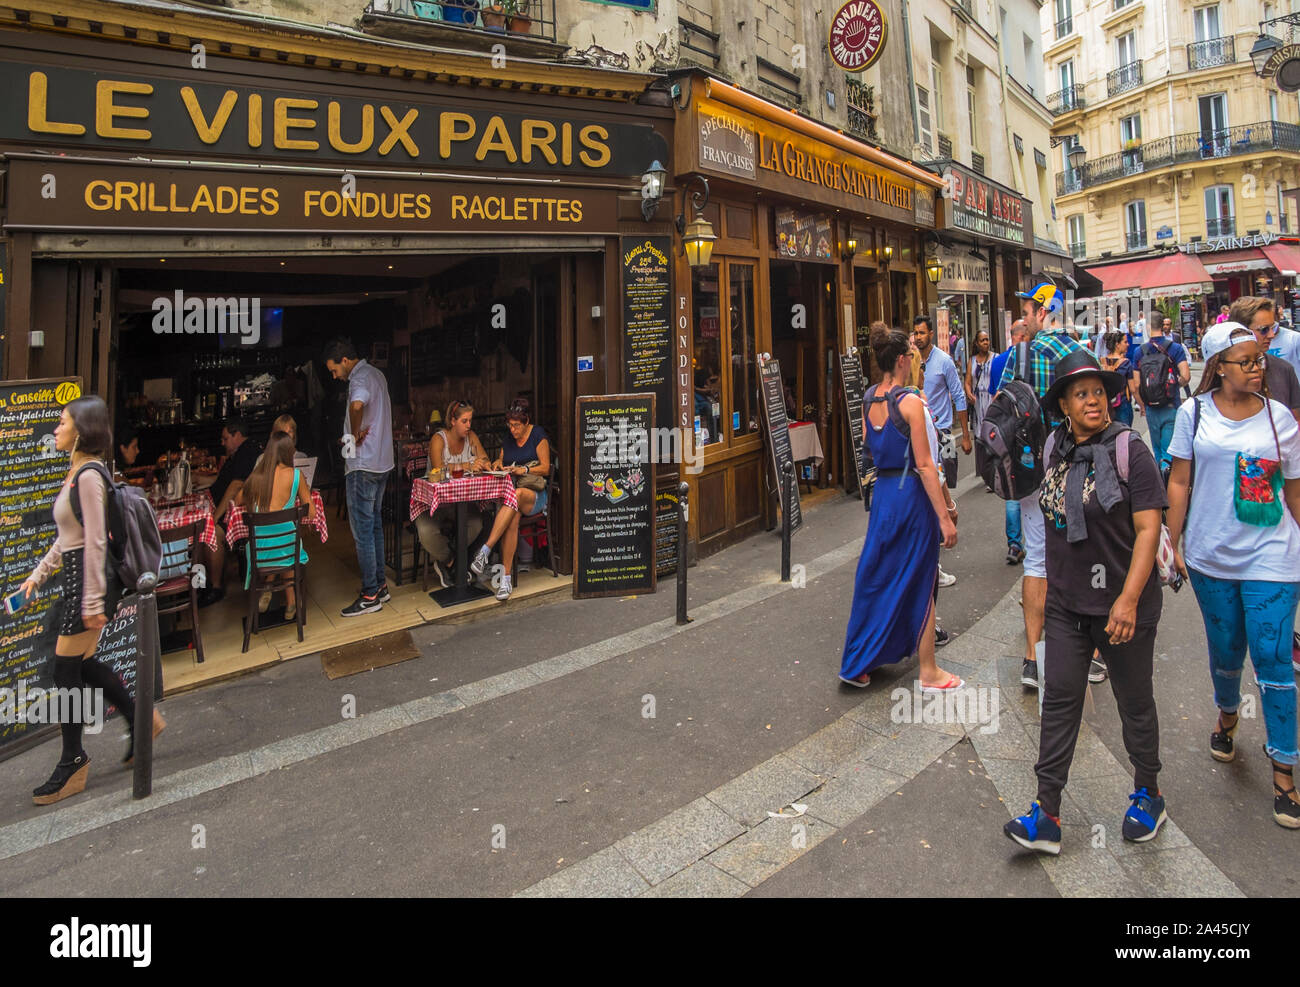 Scena di strada nella parte anteriore del ristorante "le vieux paris' Foto Stock